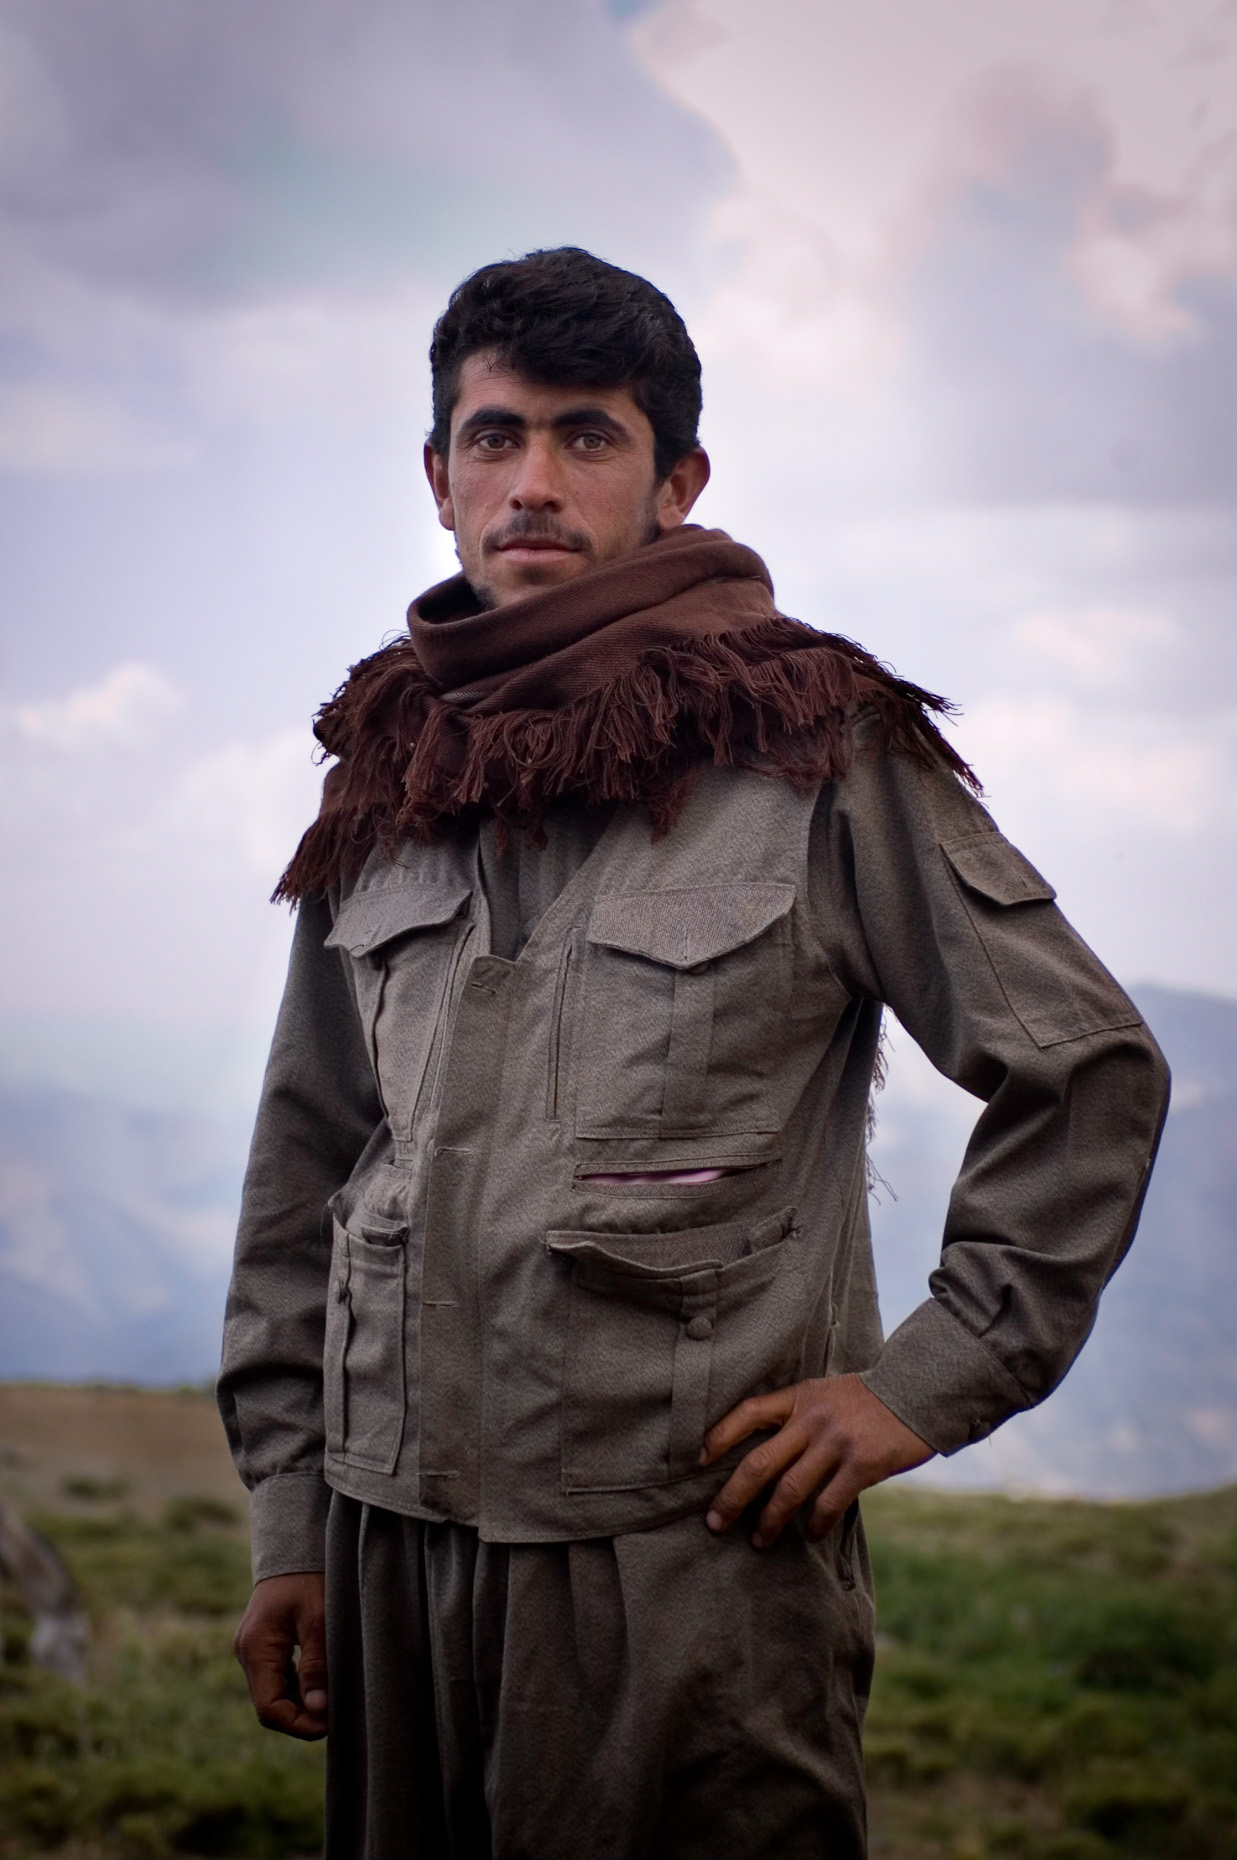 Formal portrait of Peshmurga guard in remote mountain village, near Syria. 